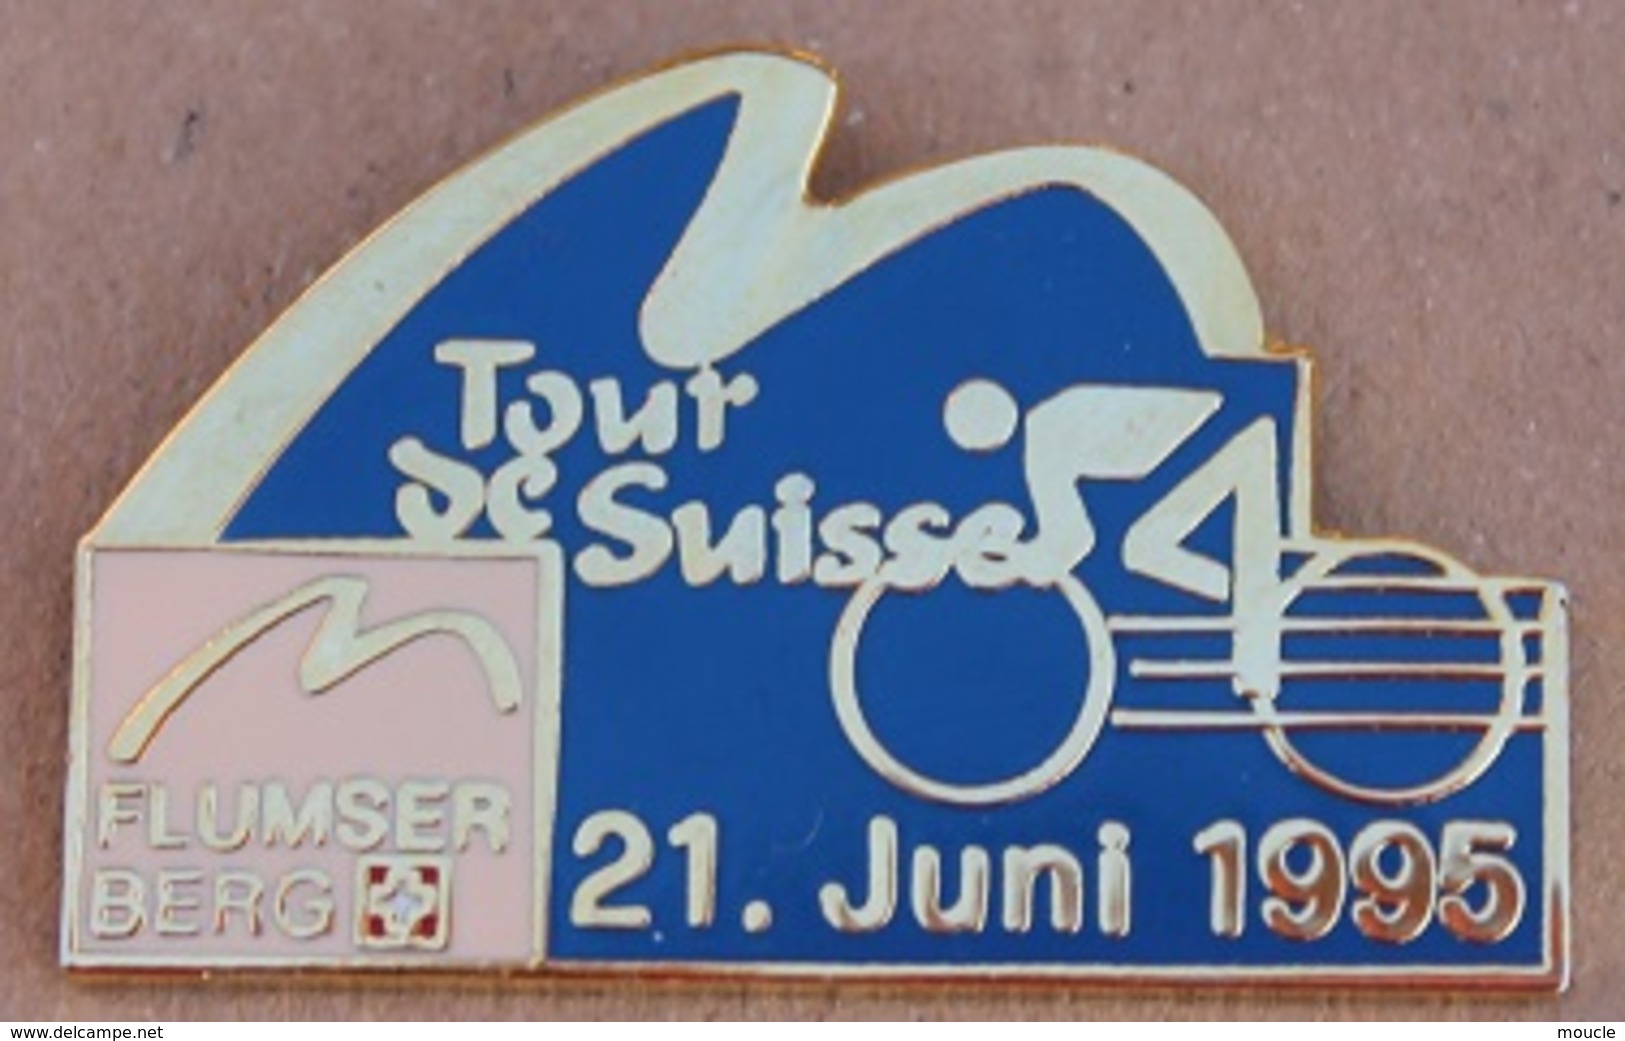 CYCLISME - VELO - CYCLISTE - TOUR DE SUISSE 21 JUNI 1995 - FLUMSER BERG  -      (16) - Radsport